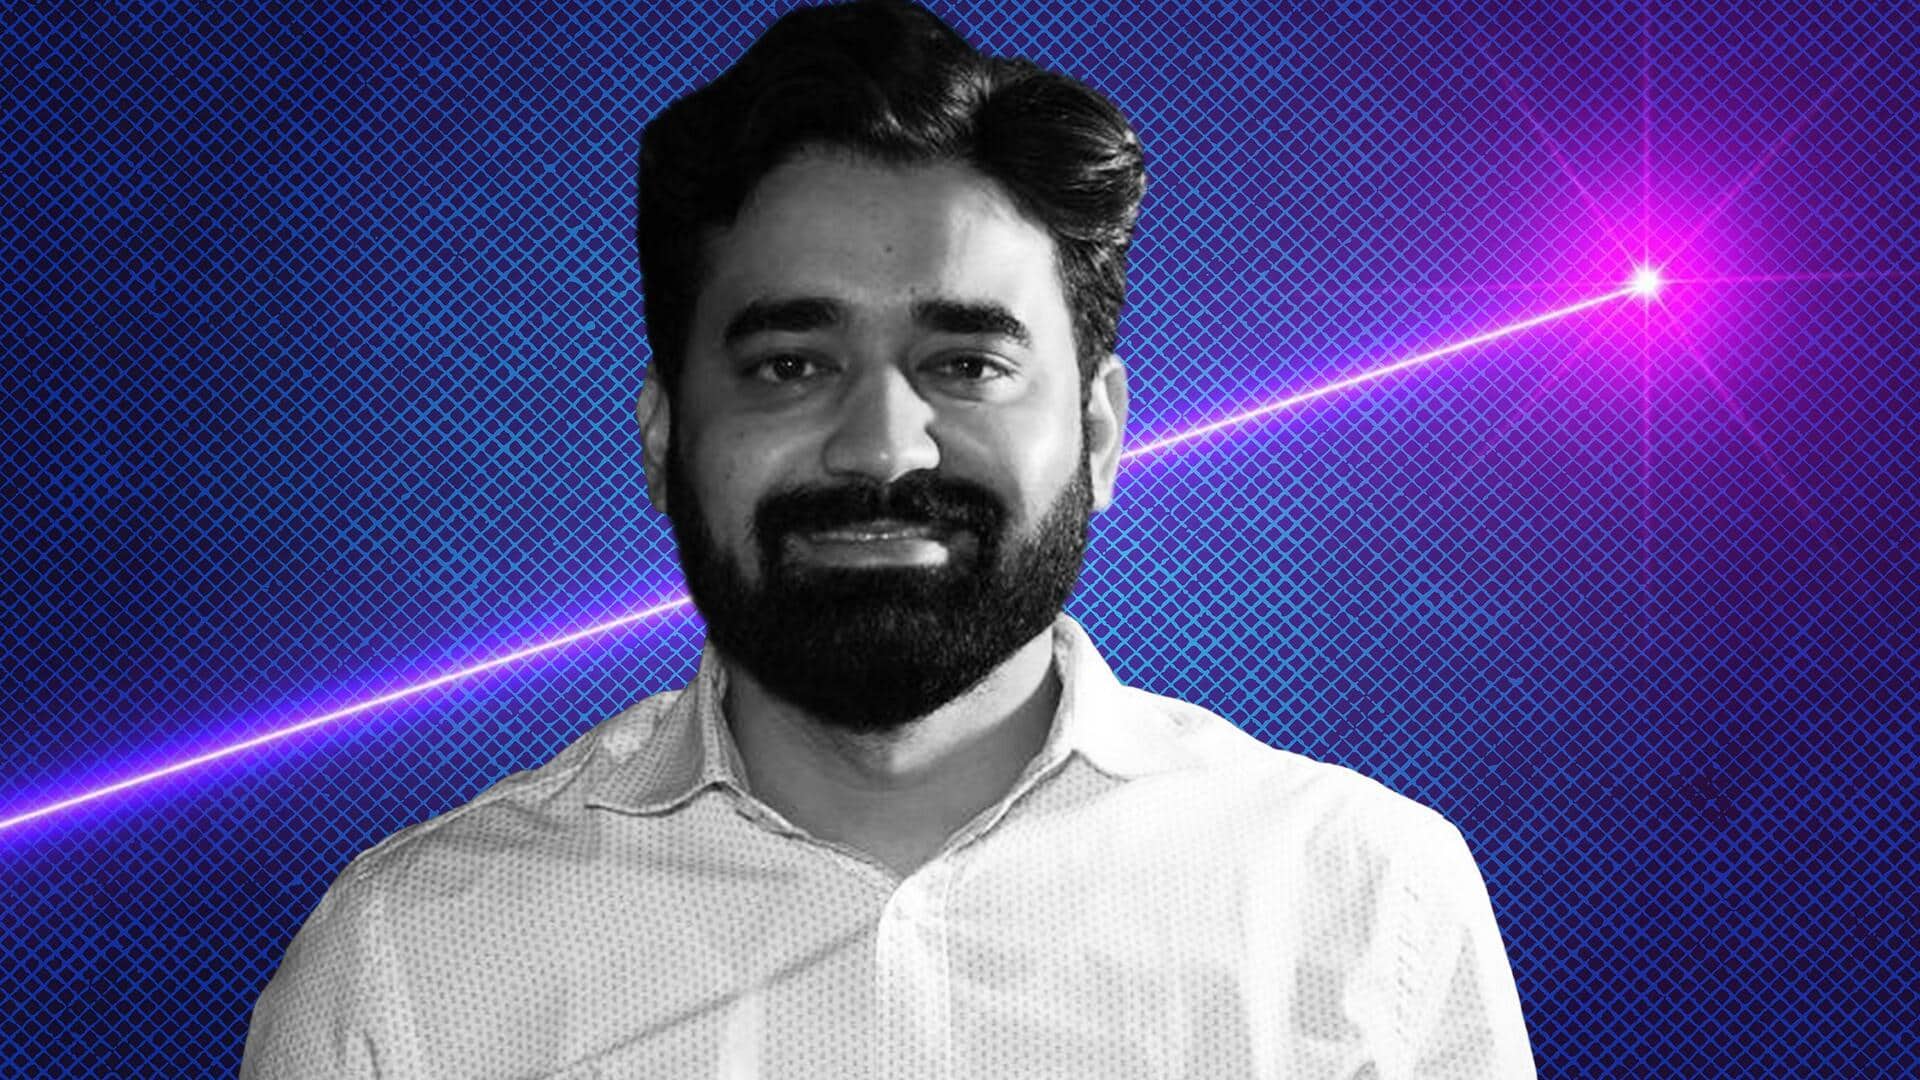 भारतीय वैज्ञानिक ने खोजी दहन से जुड़ी विश्व की सबसे तेज लेजर शीट इमेजिंग तकनीक